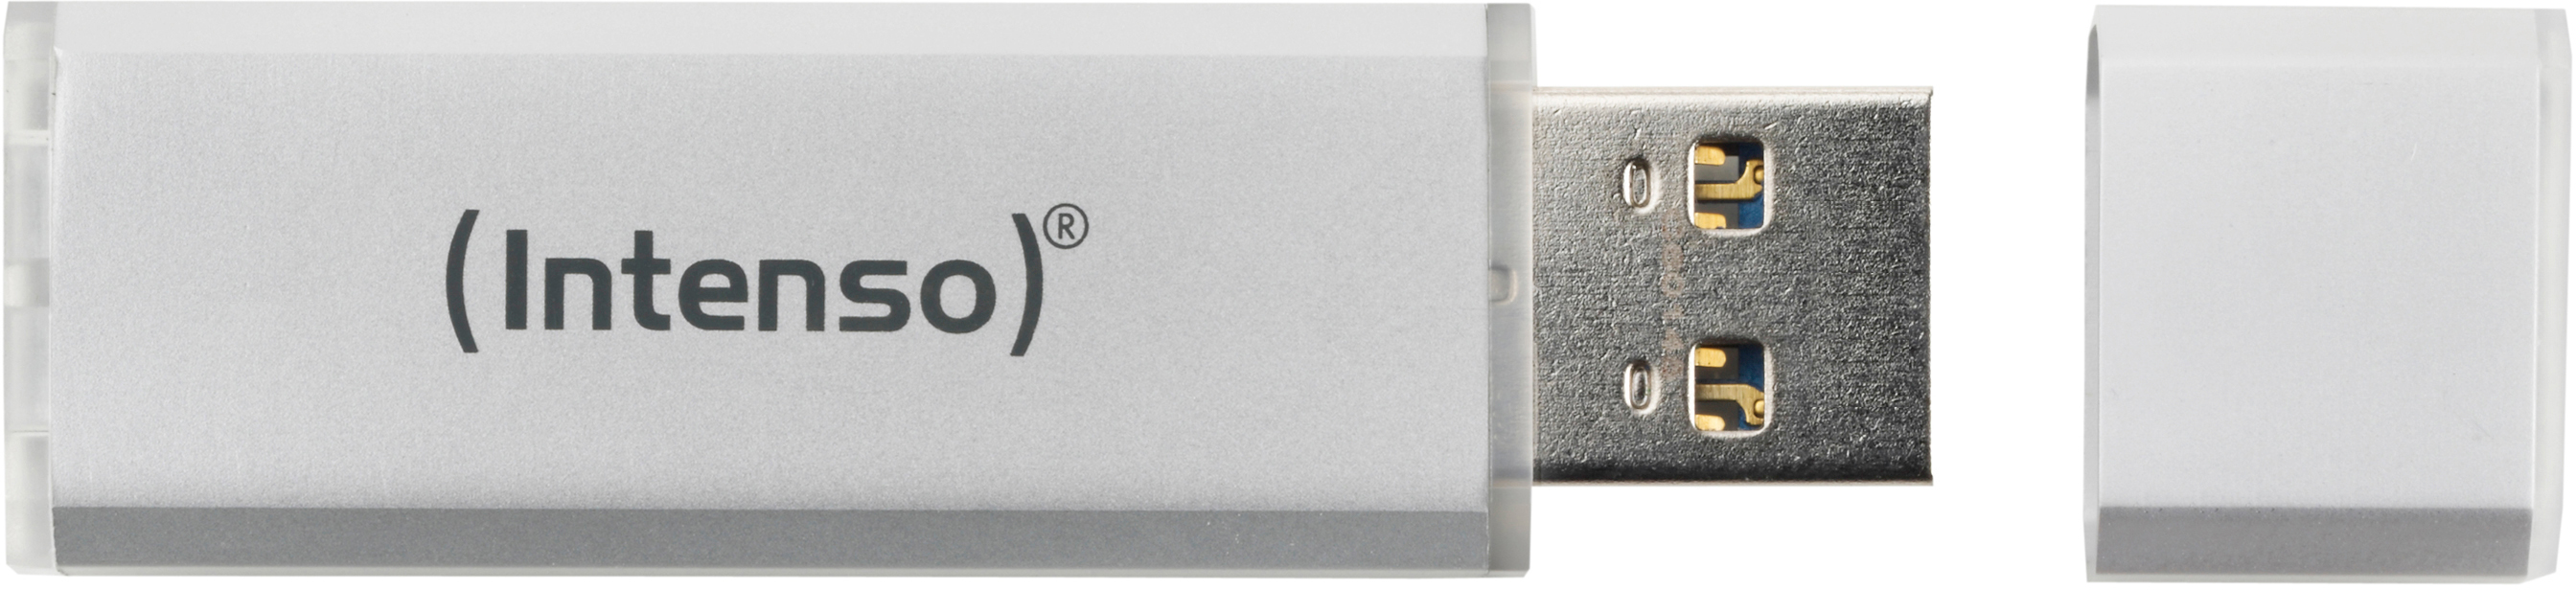 USB-Stick, 35 GB, Ultra Silber INTENSO MB/s, Line 16